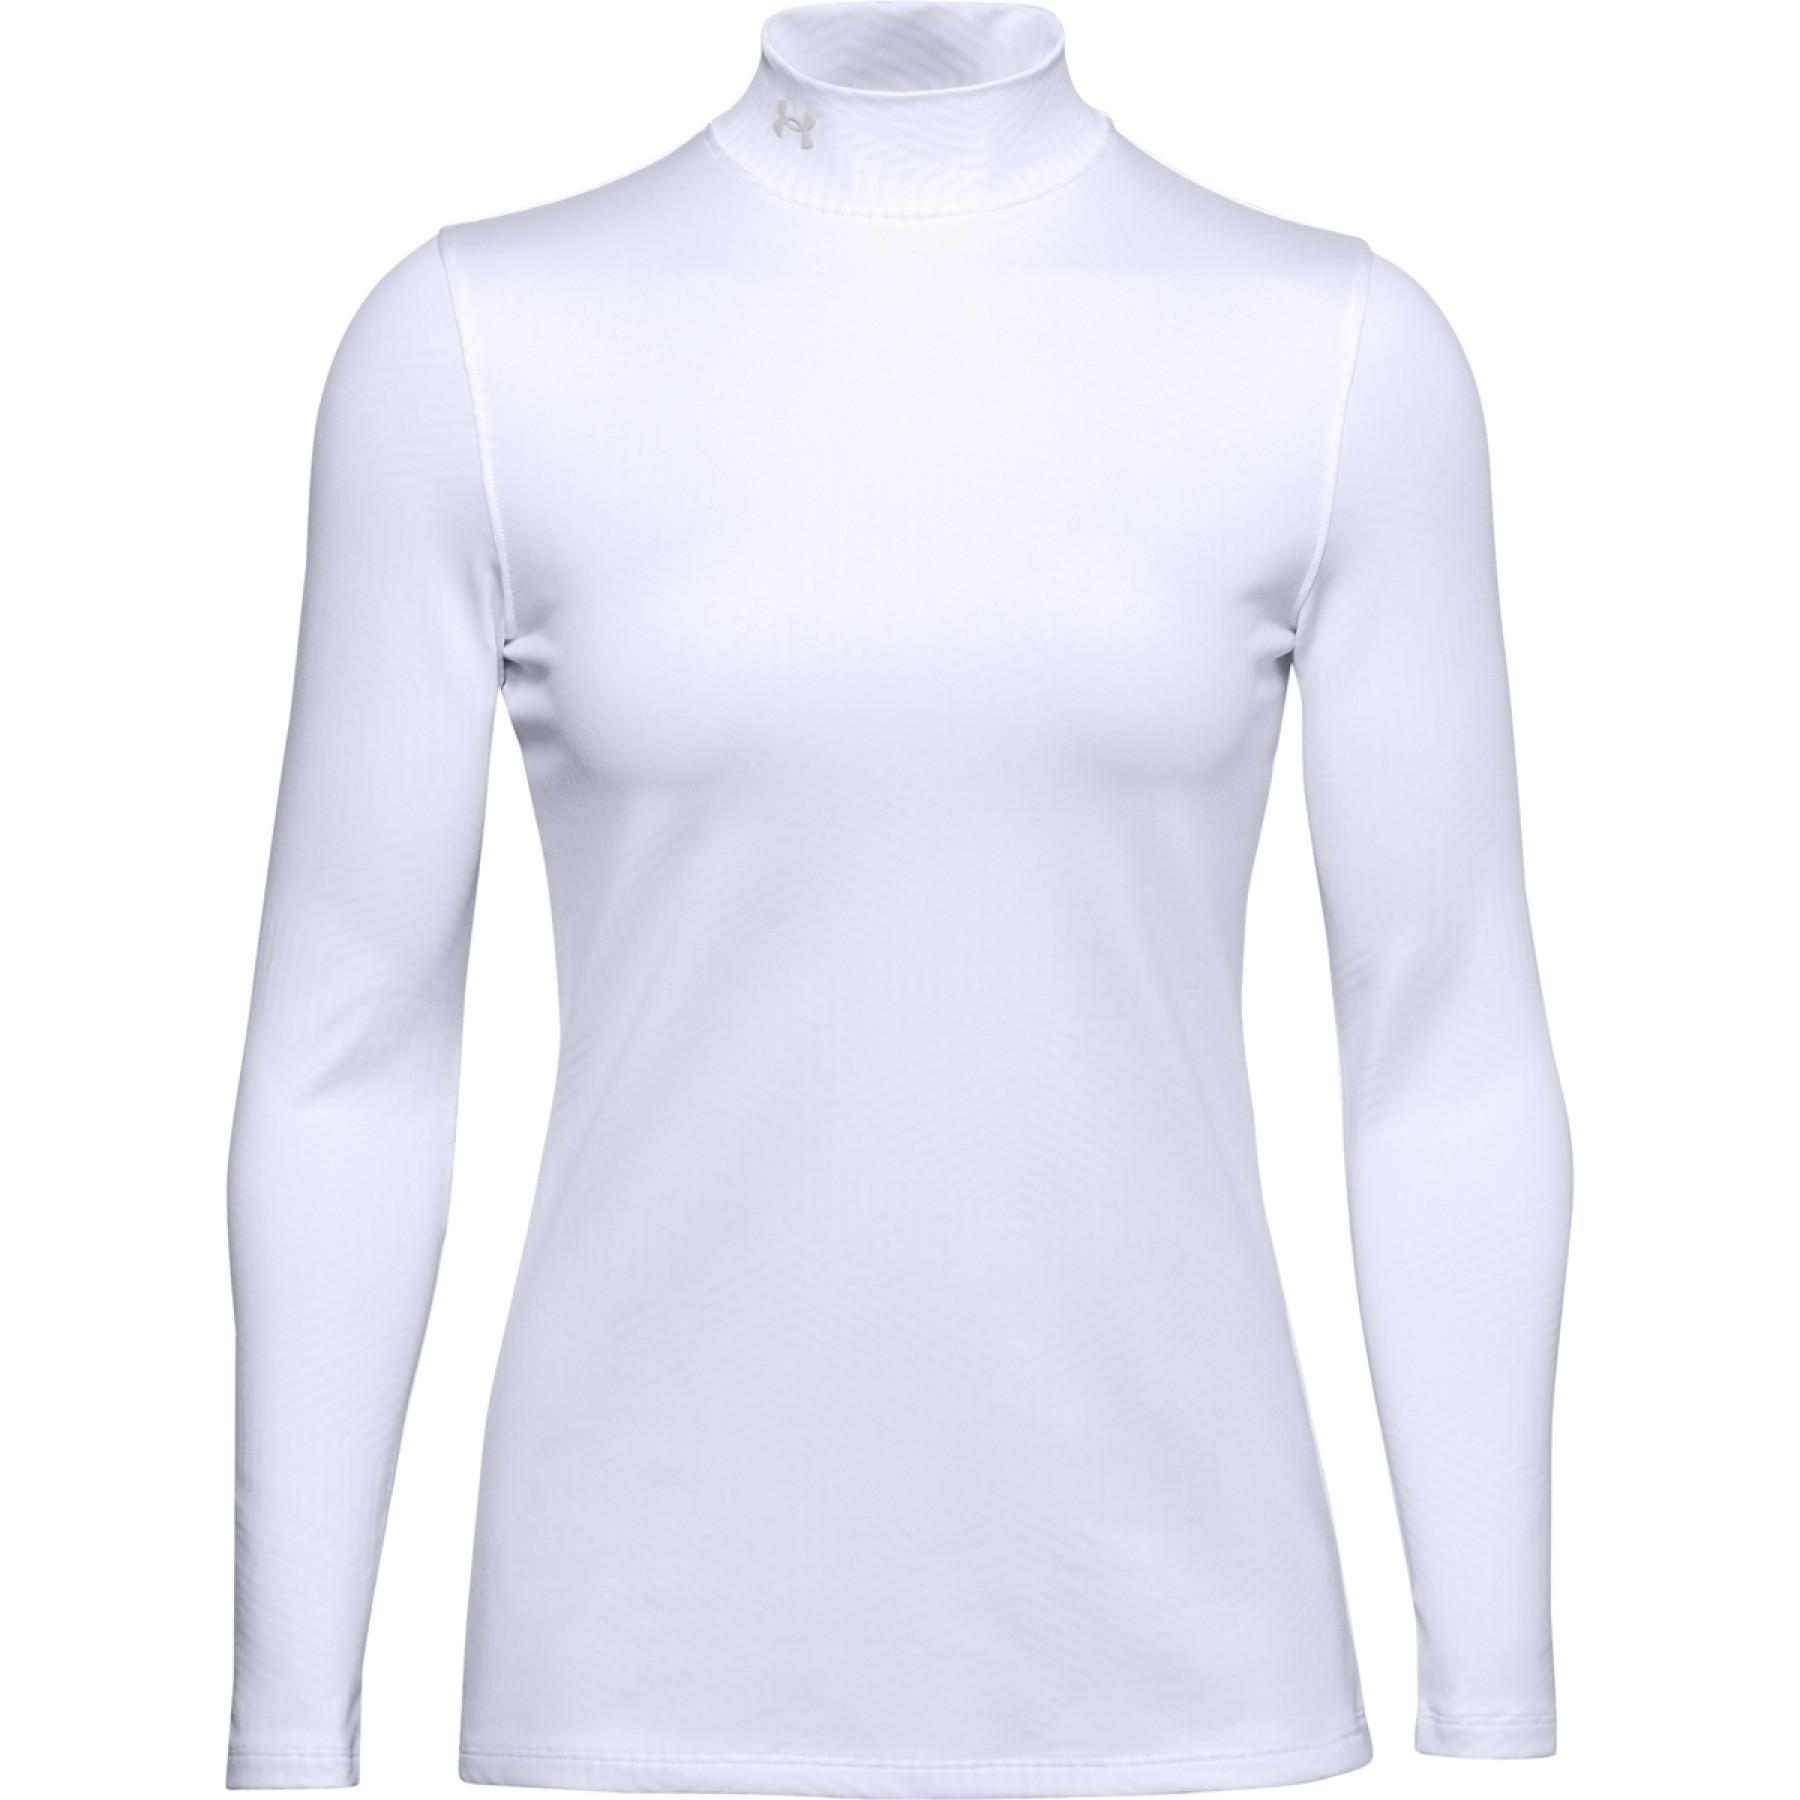 Långärmad golfskjorta för damer med infraröd ståkrage från Coldgear